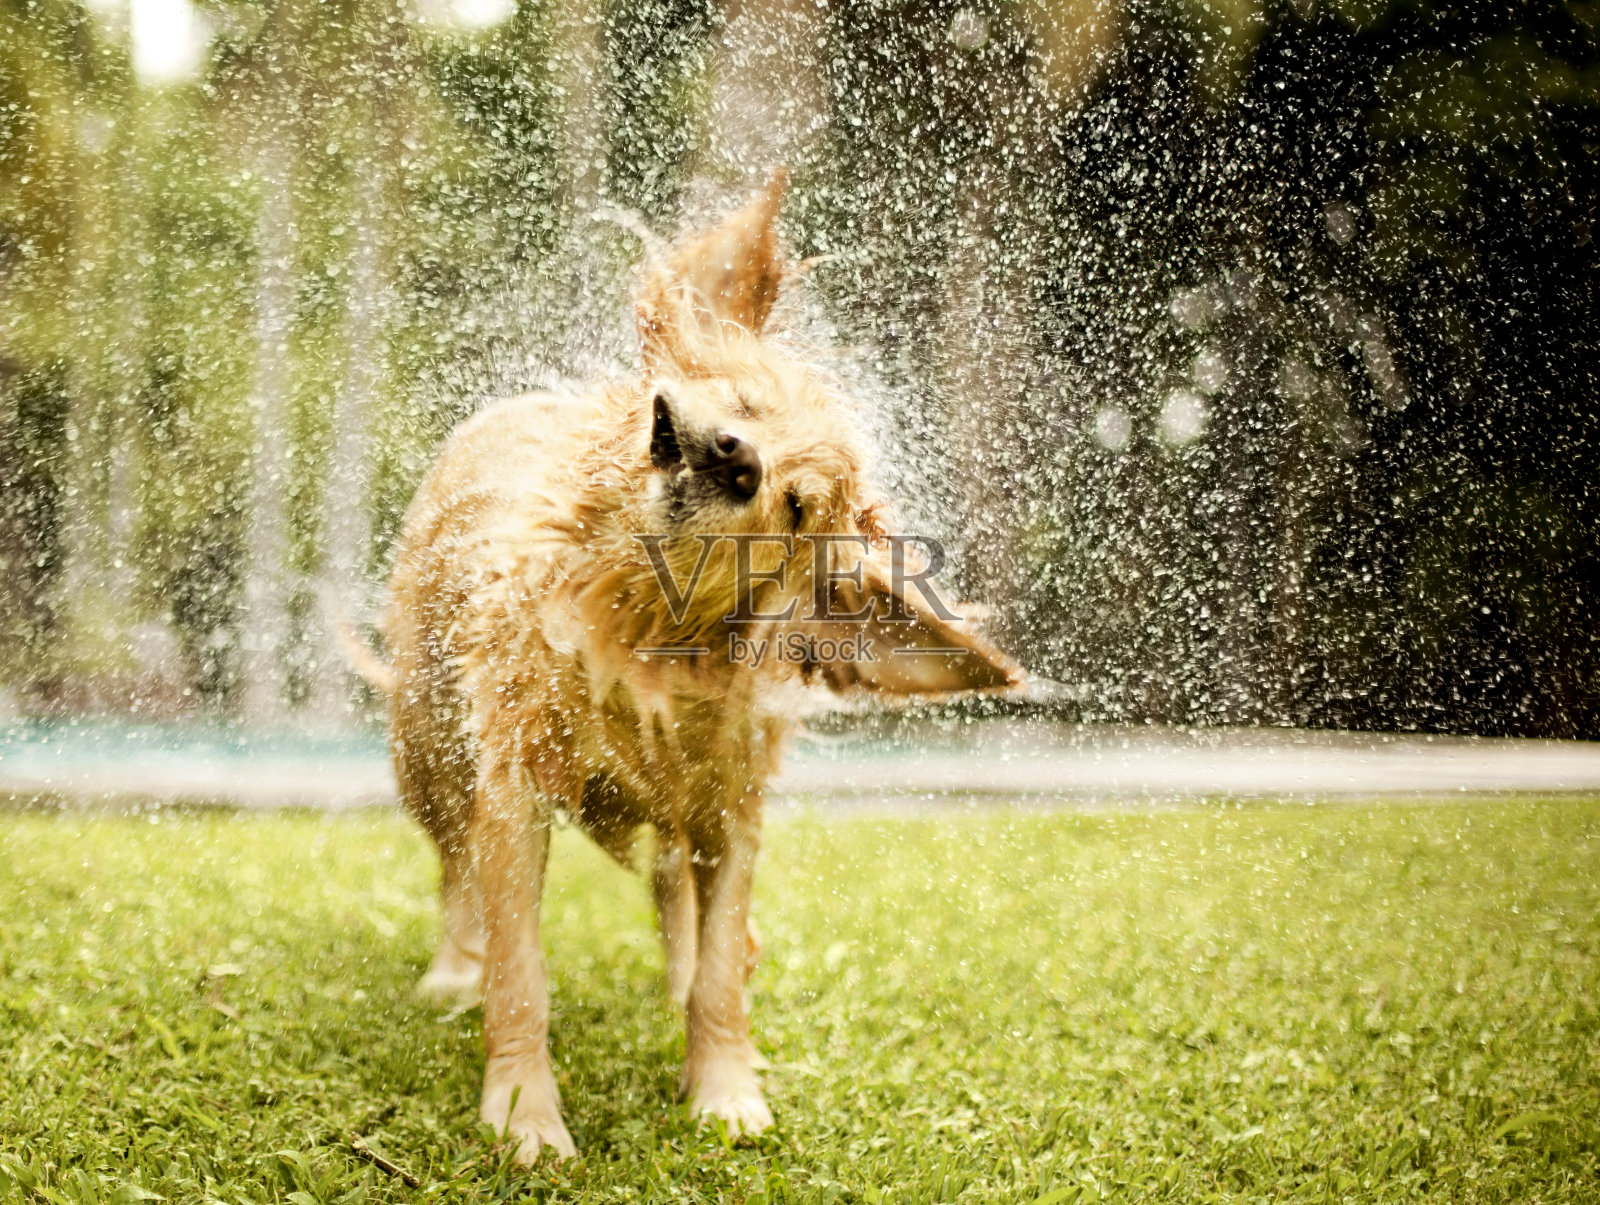 개가 머리에서 물을 흔들었다 사진 무료 다운로드 - Lovepik